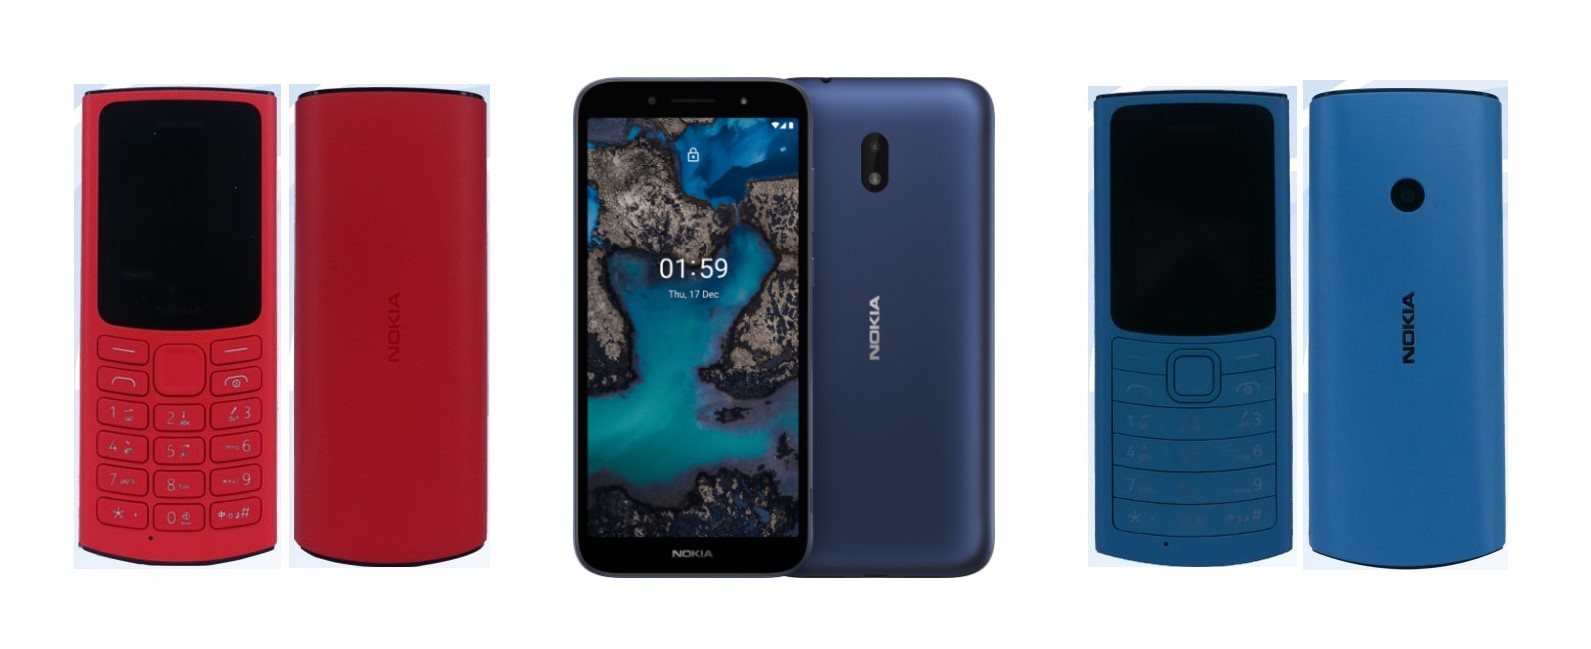 Nokia C01 Plus, Nokia 110 4G, Nokia 105 4G: Nokia đã chính thức trình làng ba mẫu điện thoại mới nhất của họ, bao gồm Nokia C01 Plus, Nokia 110 4G và Nokia 105 4G. Các mẫu điện thoại này được thiết kế độc đáo, hữu ích với mức giá phải chăng.